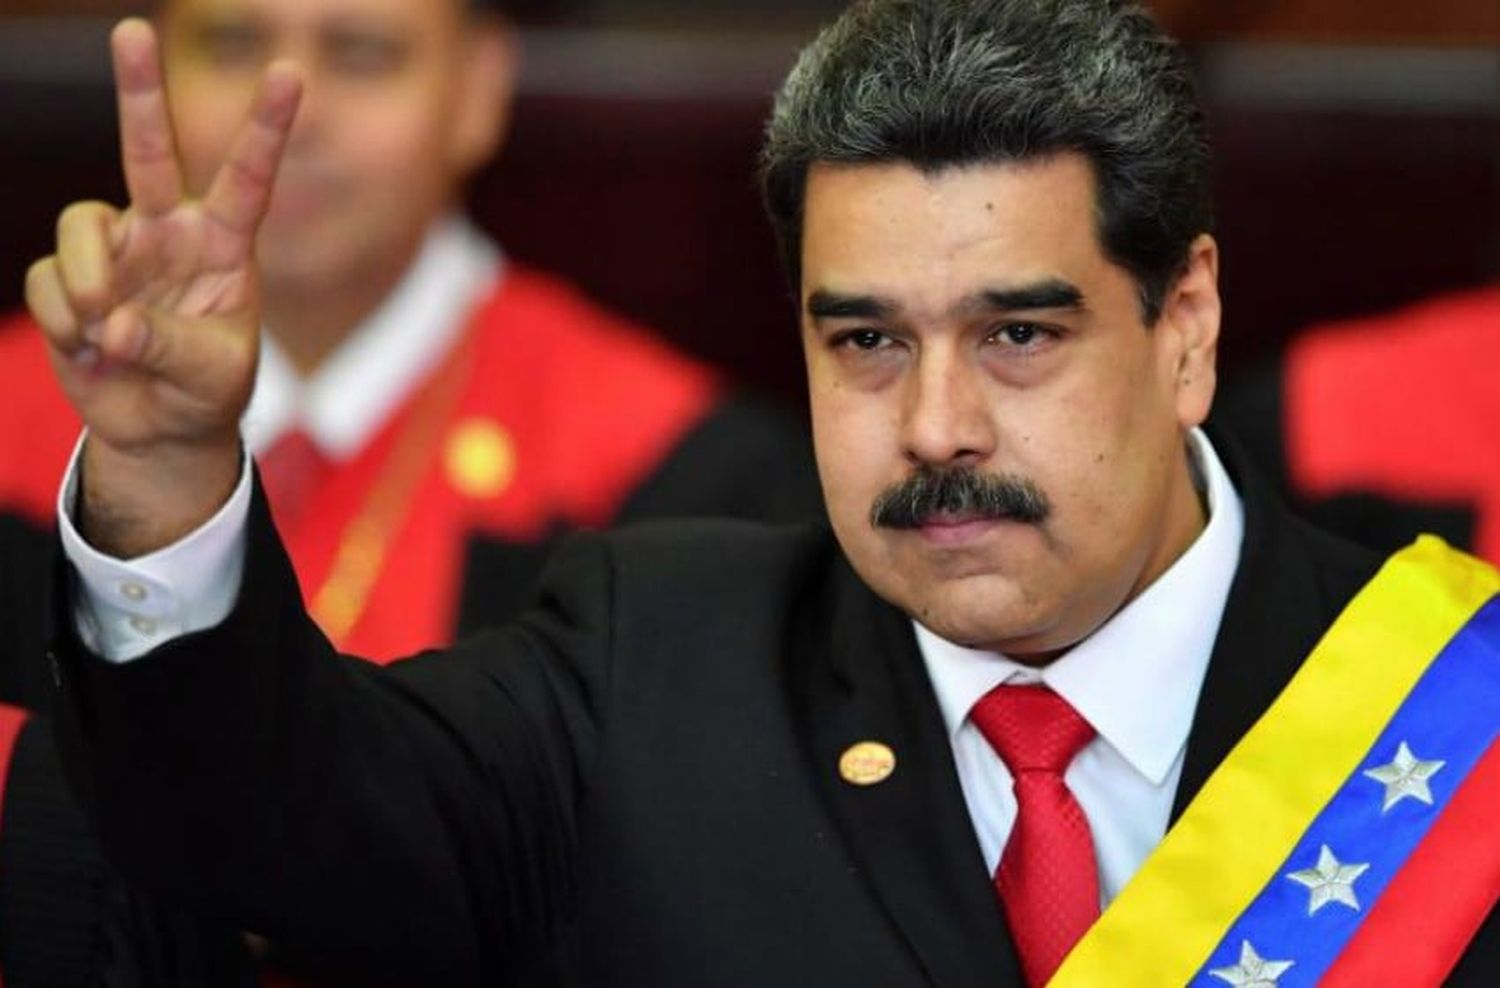 Elecciones en Venezuela: Maduro invitó como “acompañantes internacionales” a dirigentes kirchneristas